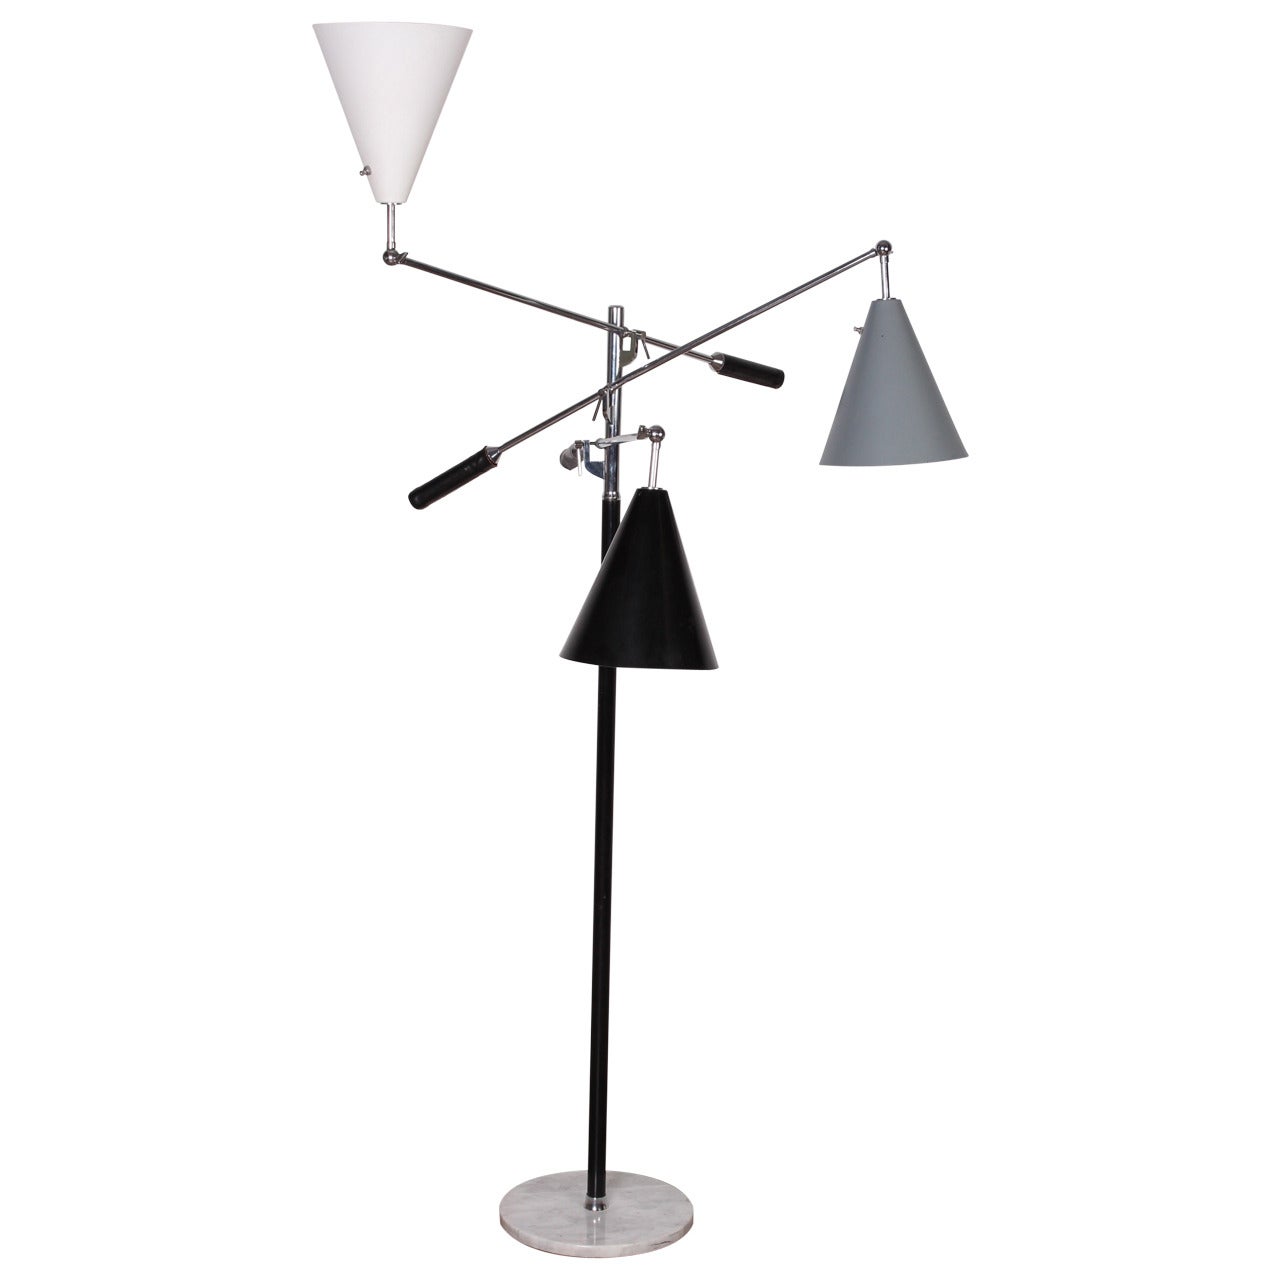 Triennale Lamp by Arredoluce